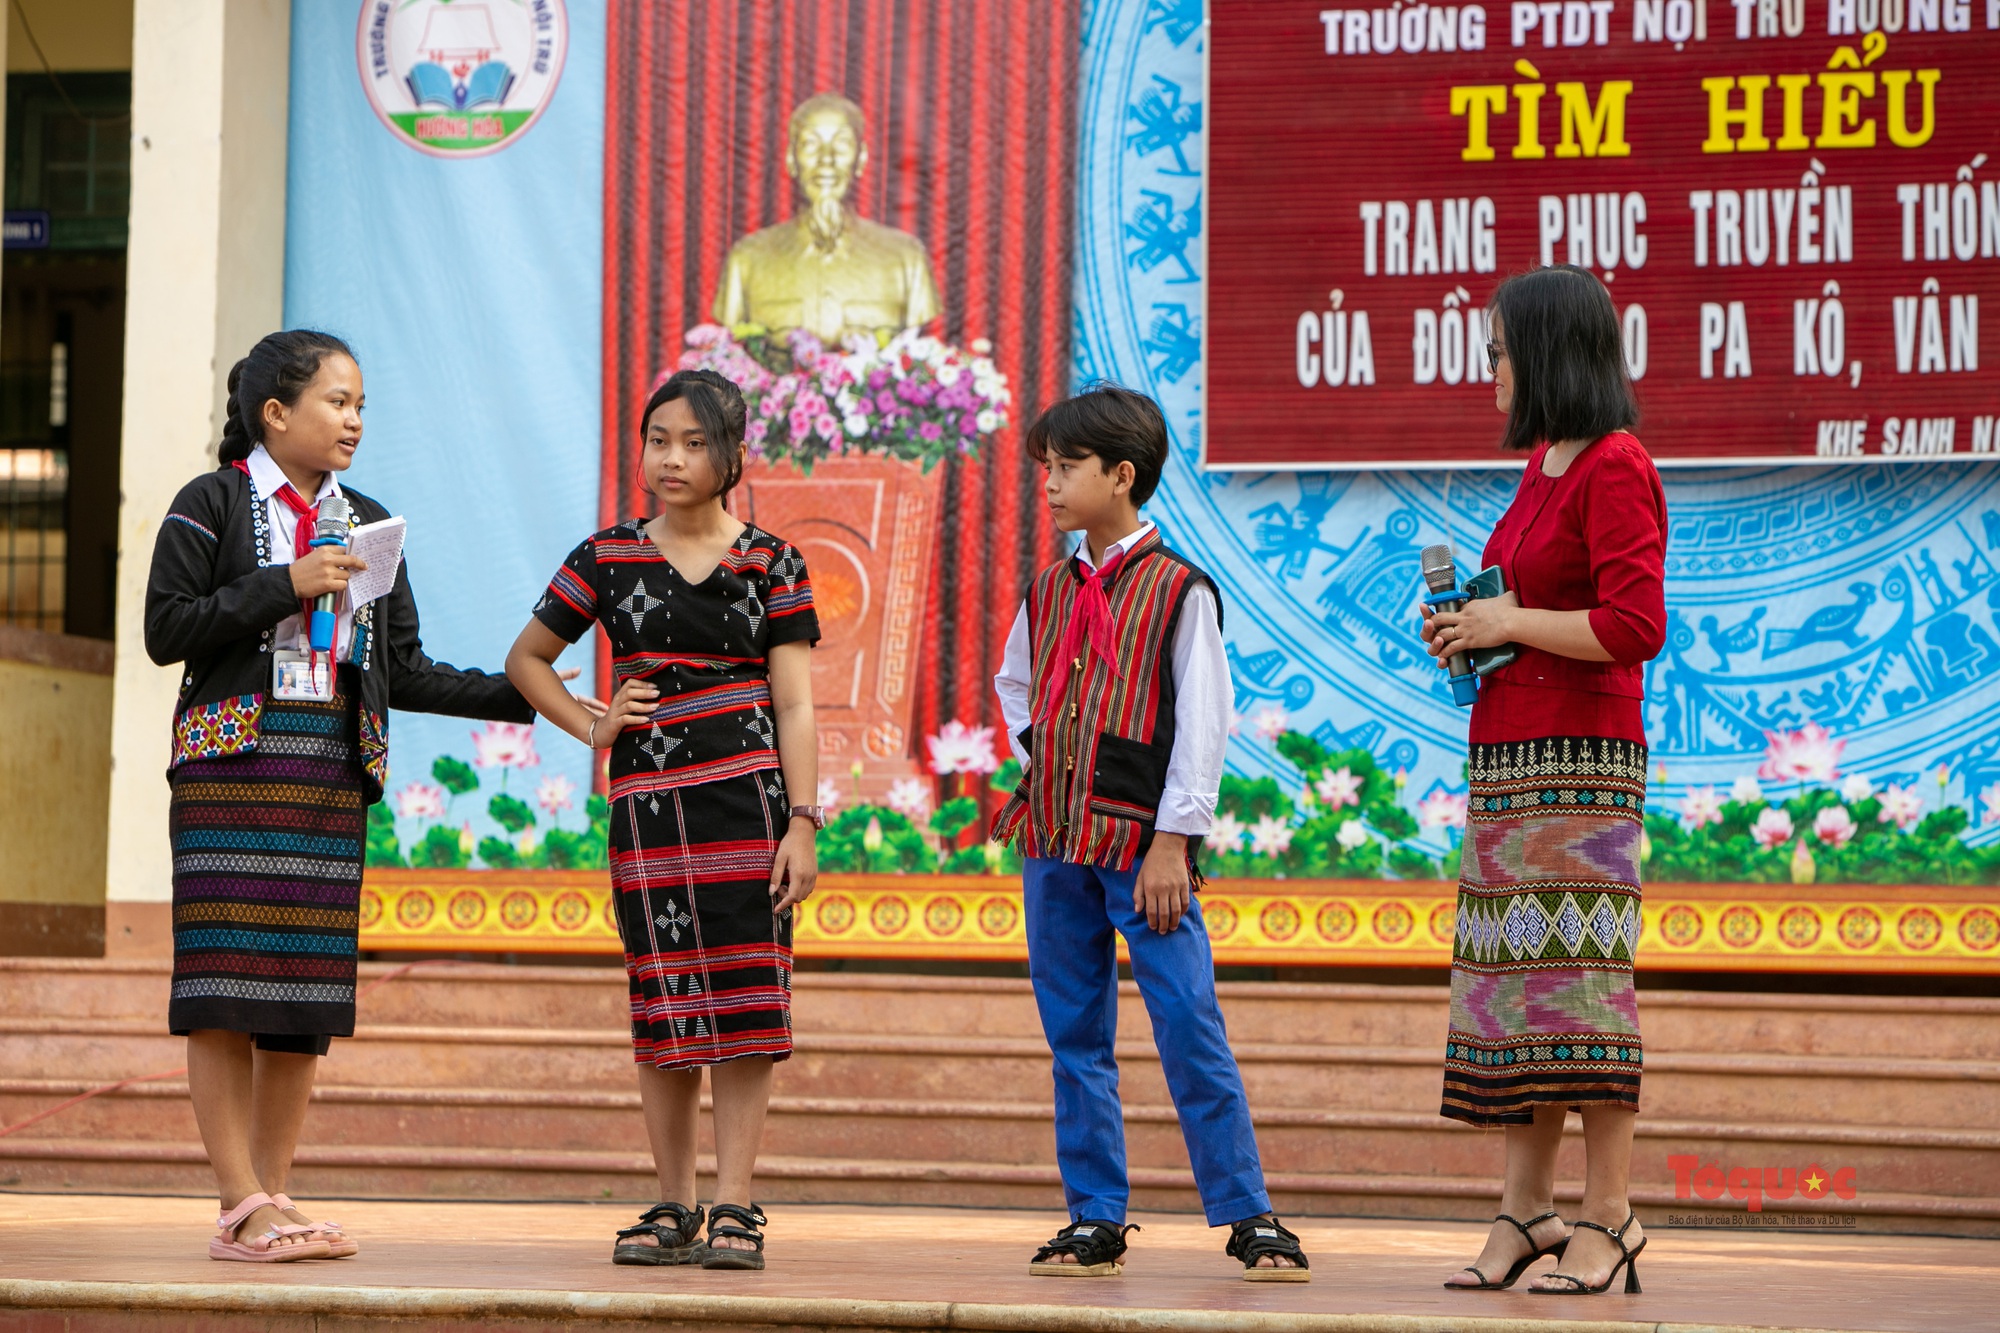 Khơi dậy niềm tự hào về trang phục truyền thống các dân tộc trong trường học - Ảnh 6.